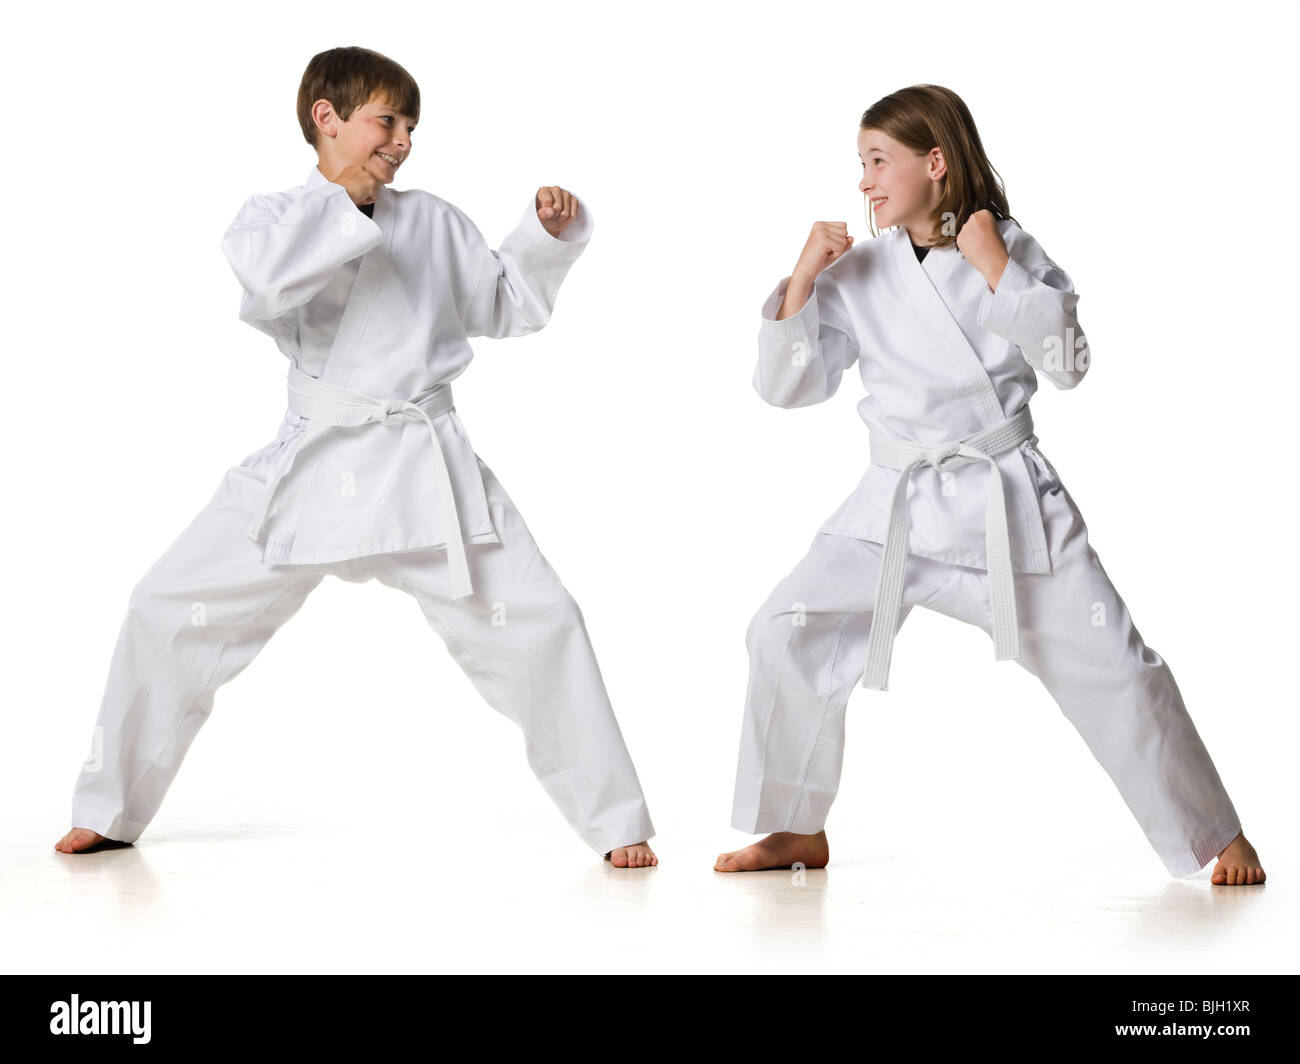 Artes marciales - Defensa personal